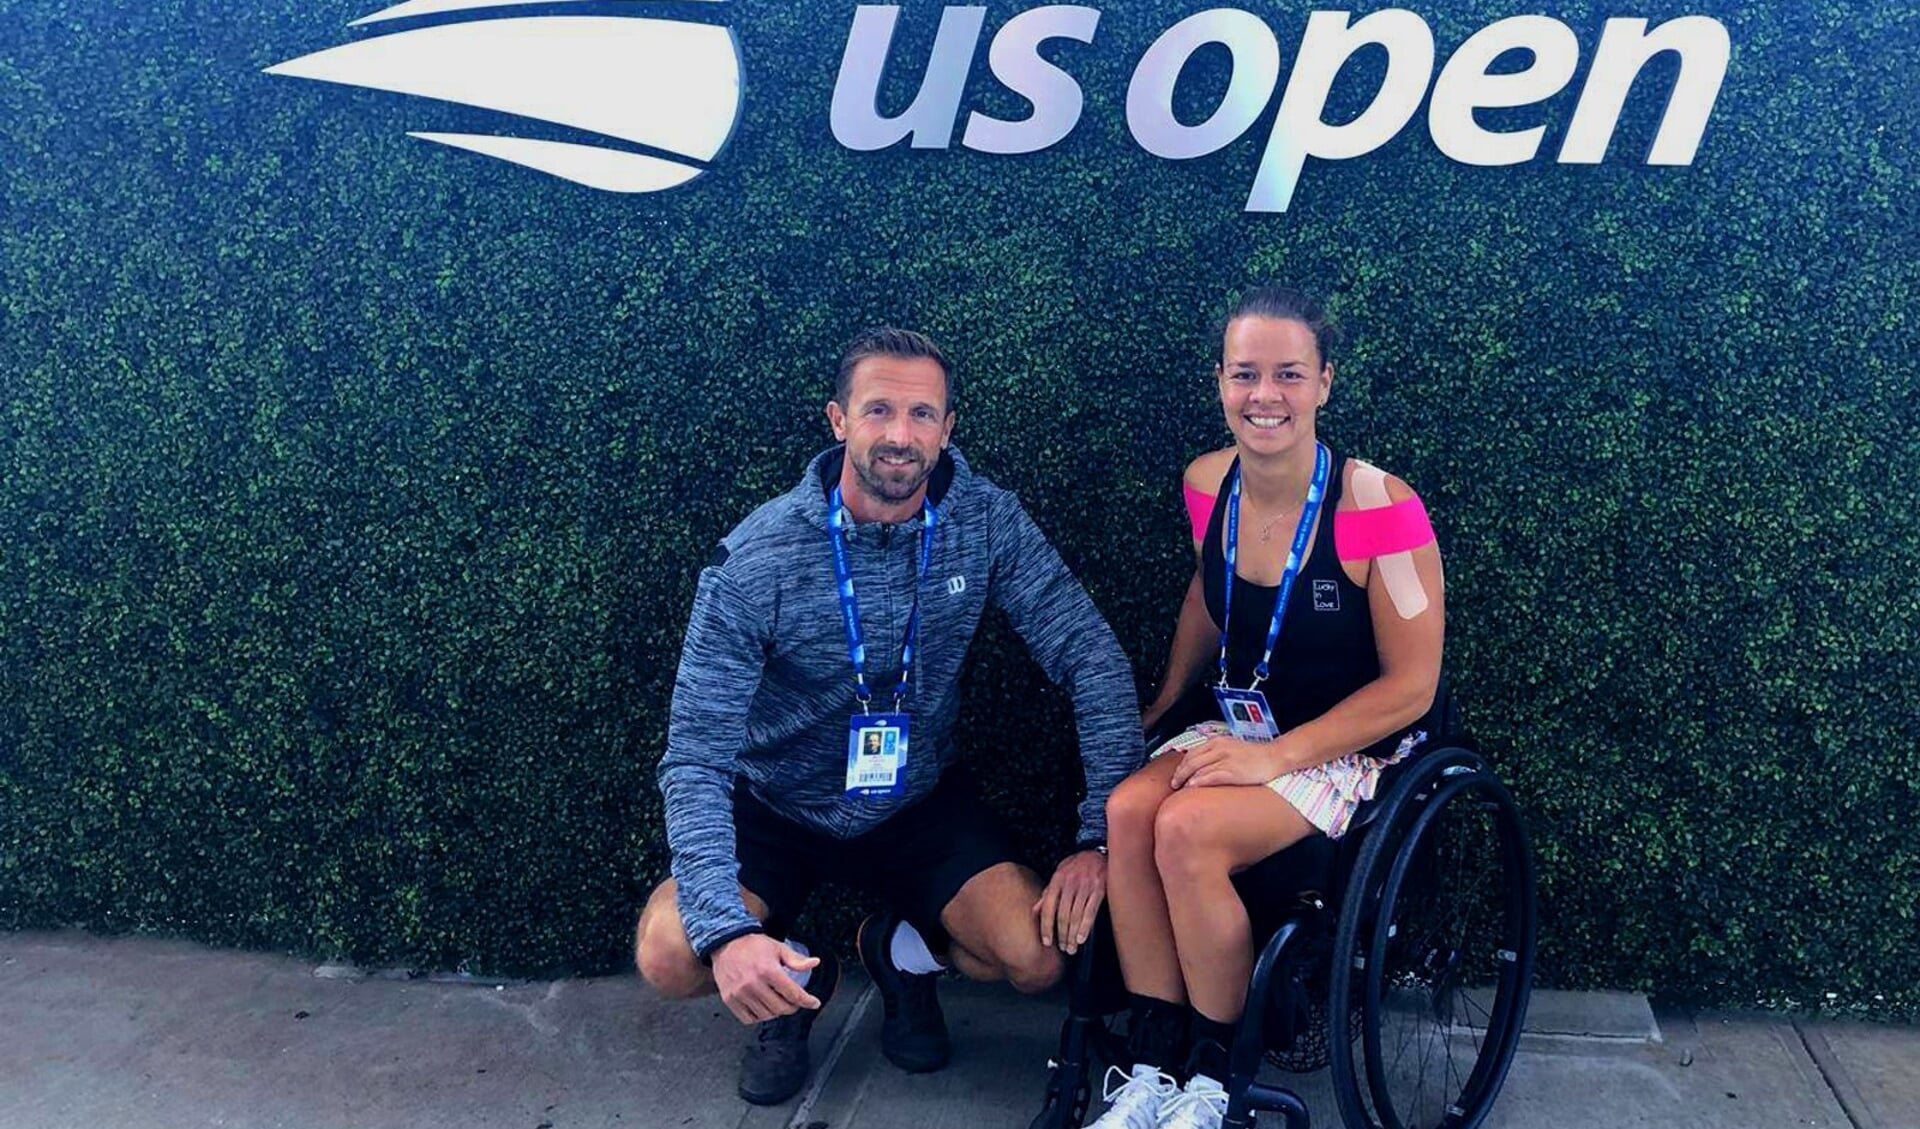 Buis met haar coach Wouter Kropman op de US Open.